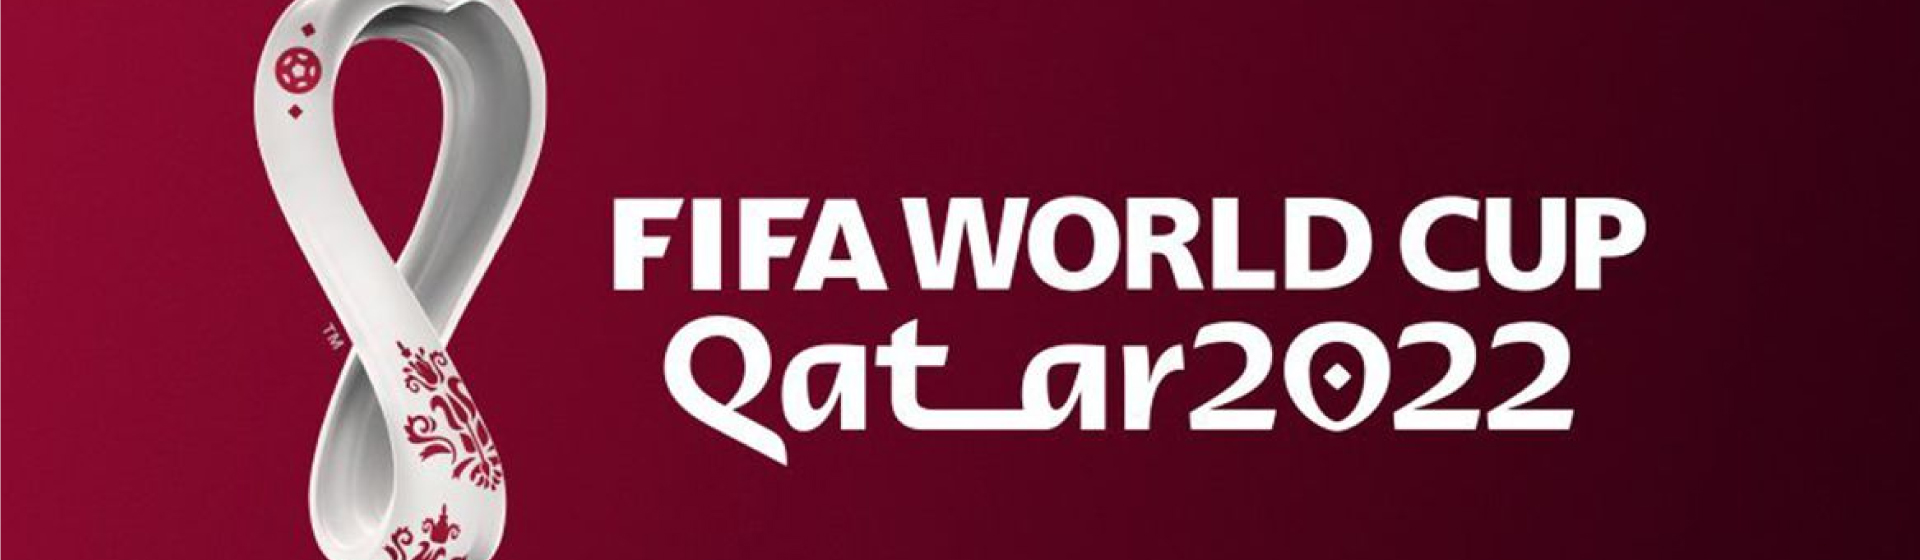 Fifa World Cup 2022 - Kia